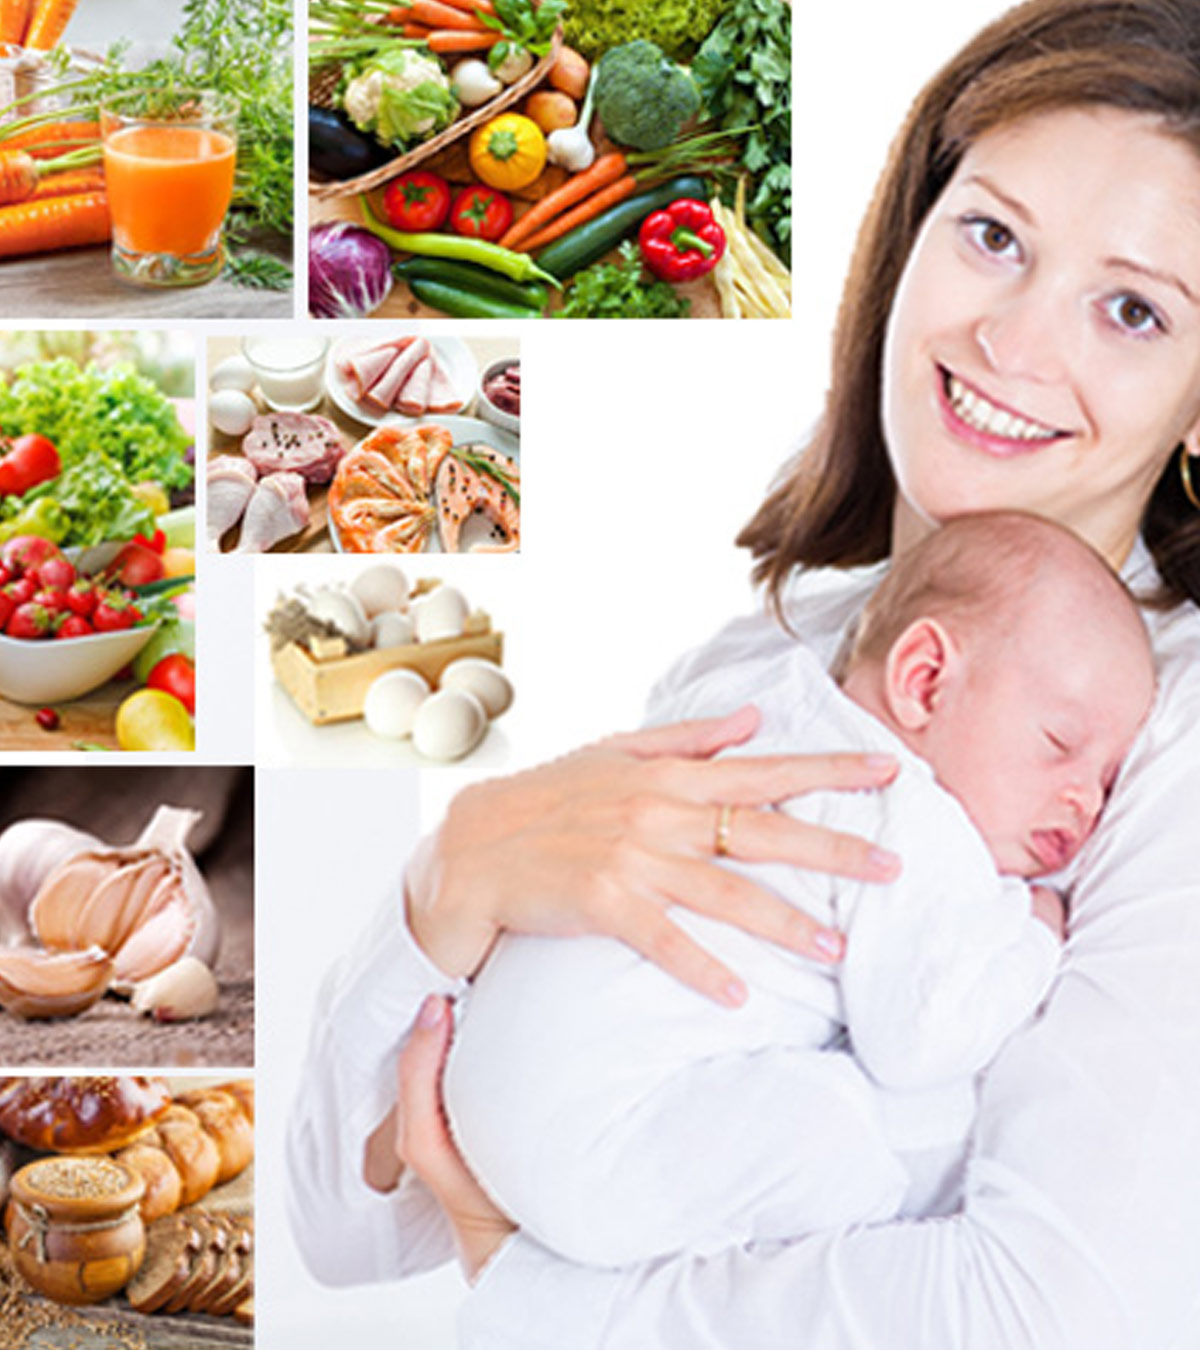 చనుబాలివ్వడం సమయంలో తినాల్సిన మరియు నివారించాల్సిన ఆహారాలు – Foods to eat and avoid during breastfeeding